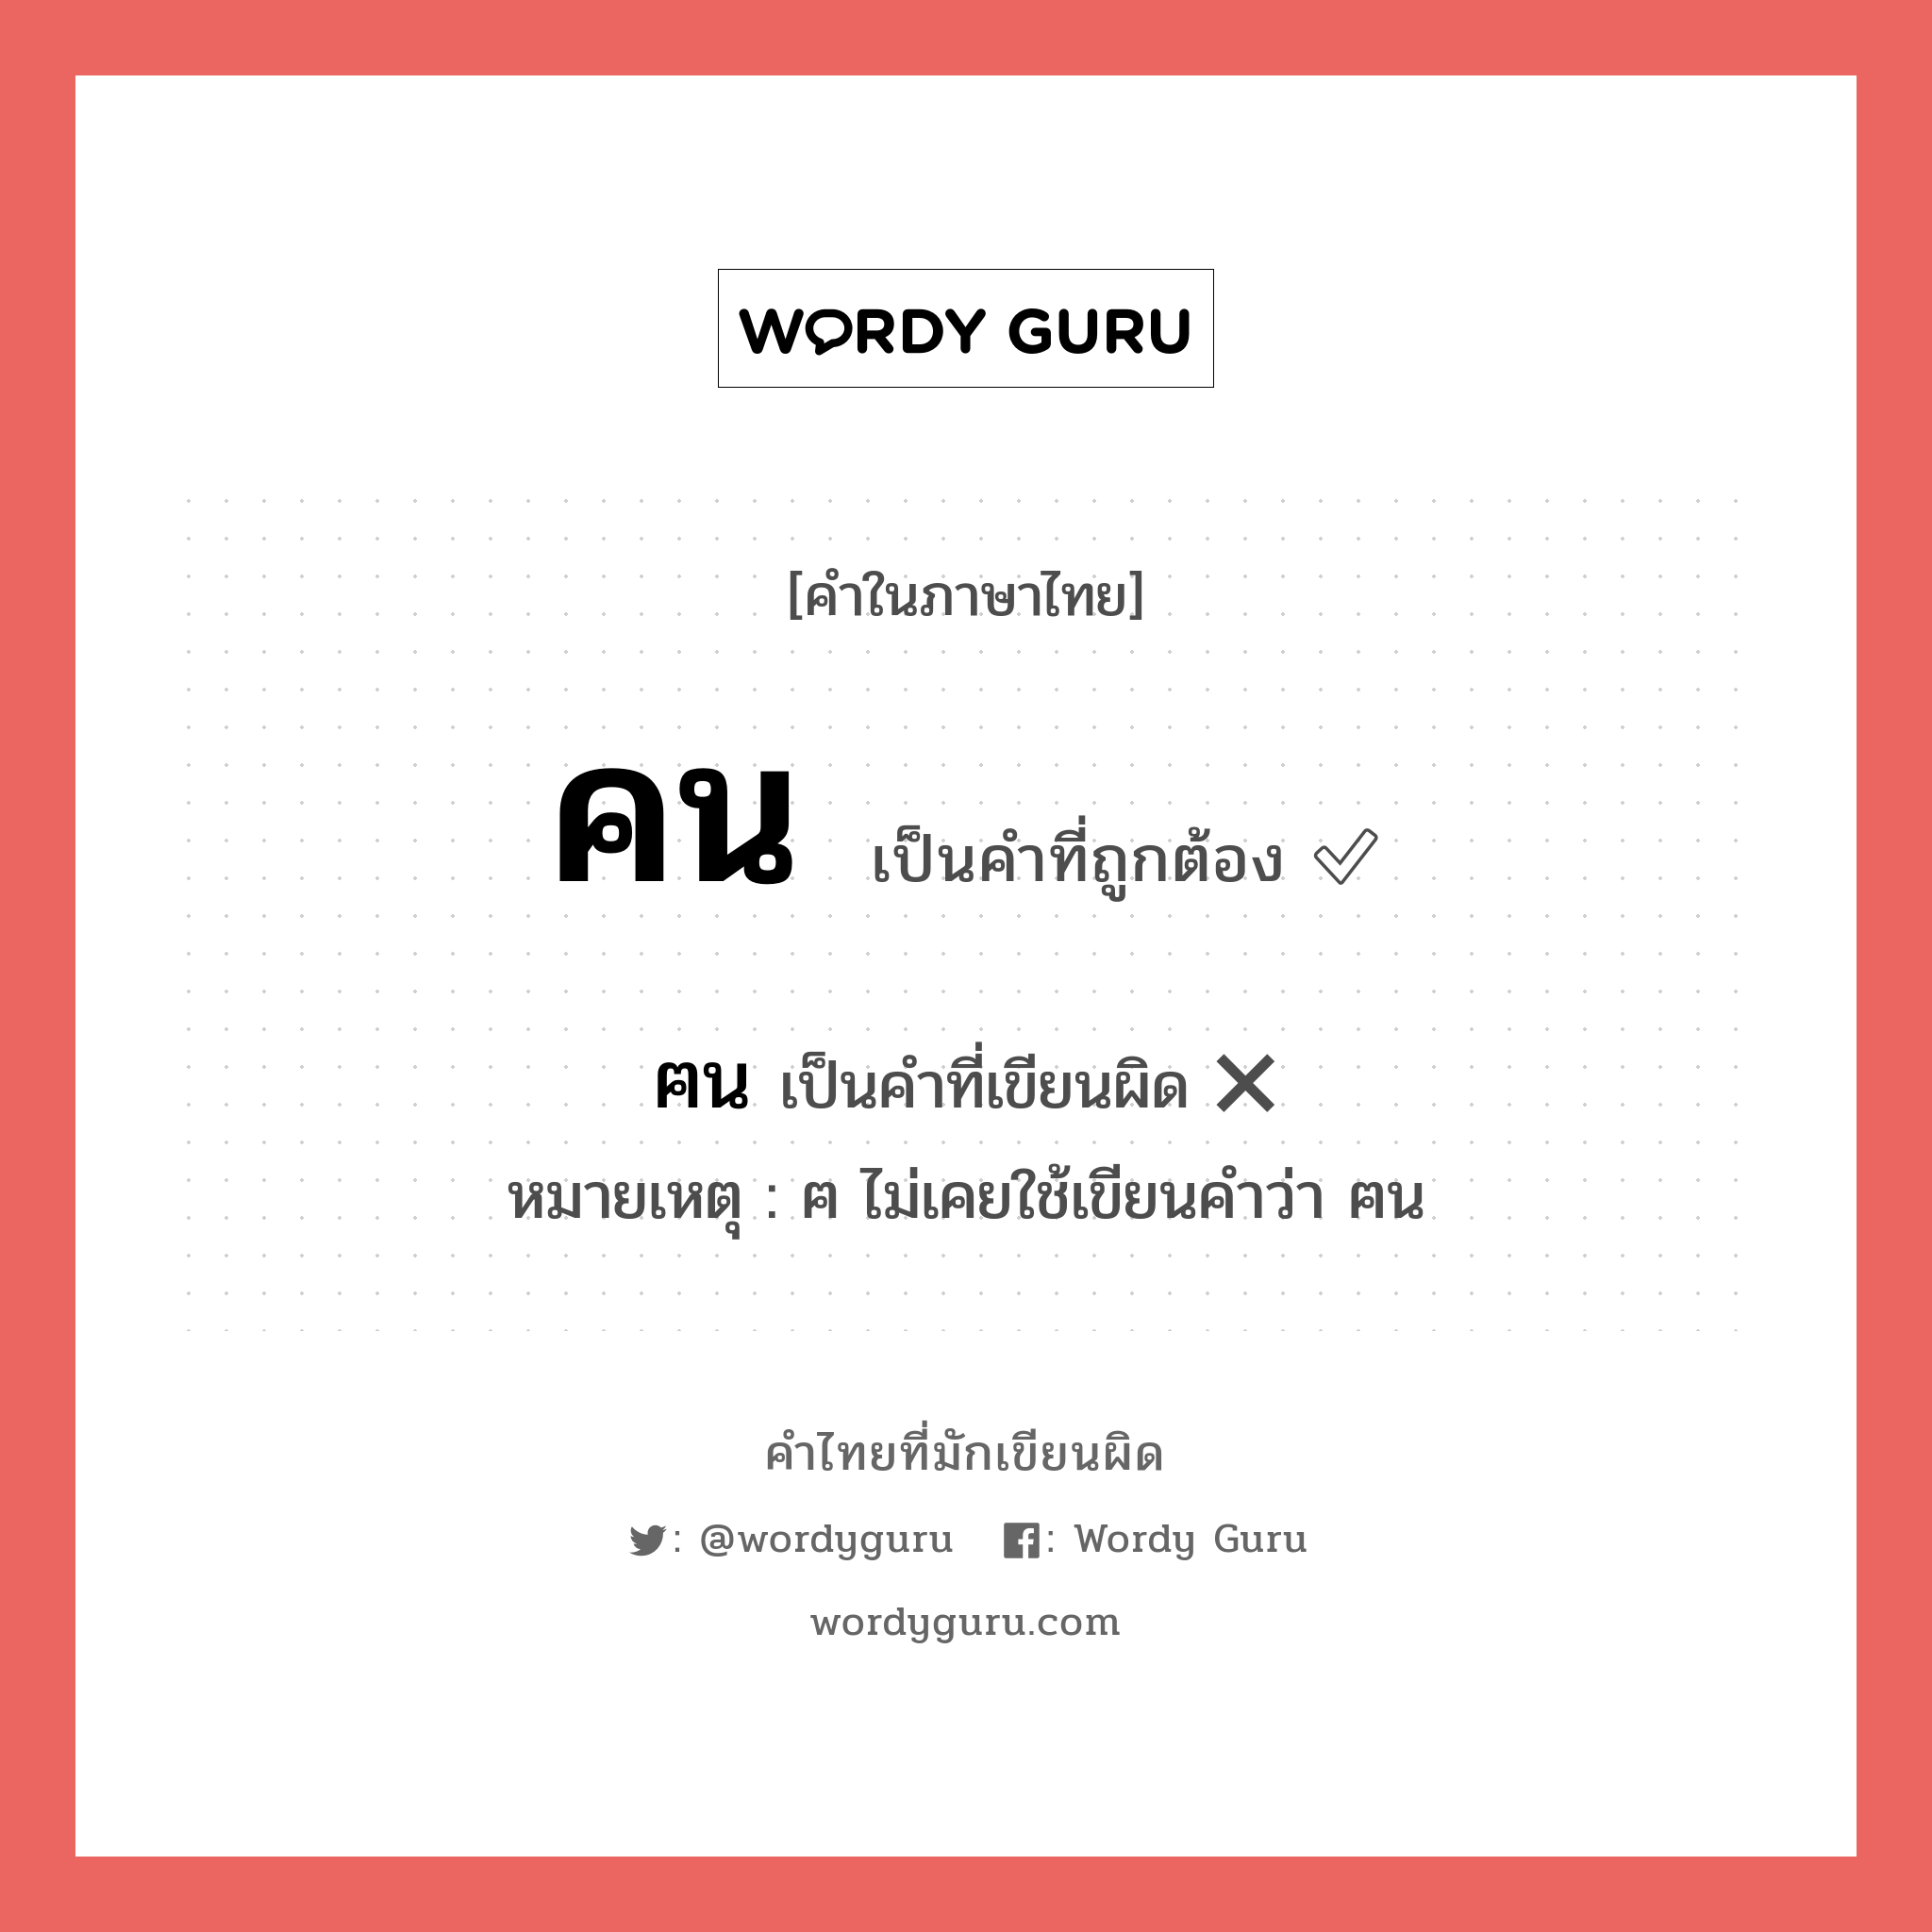 คน หรือ ฅน เขียนยังไง? คำไหนเขียนถูก?, คำในภาษาไทยที่มักเขียนผิด คน คำที่ผิด ❌ ฅน หมายเหตุ ฅ ไม่เคยใช้เขียนคำว่า ฅน